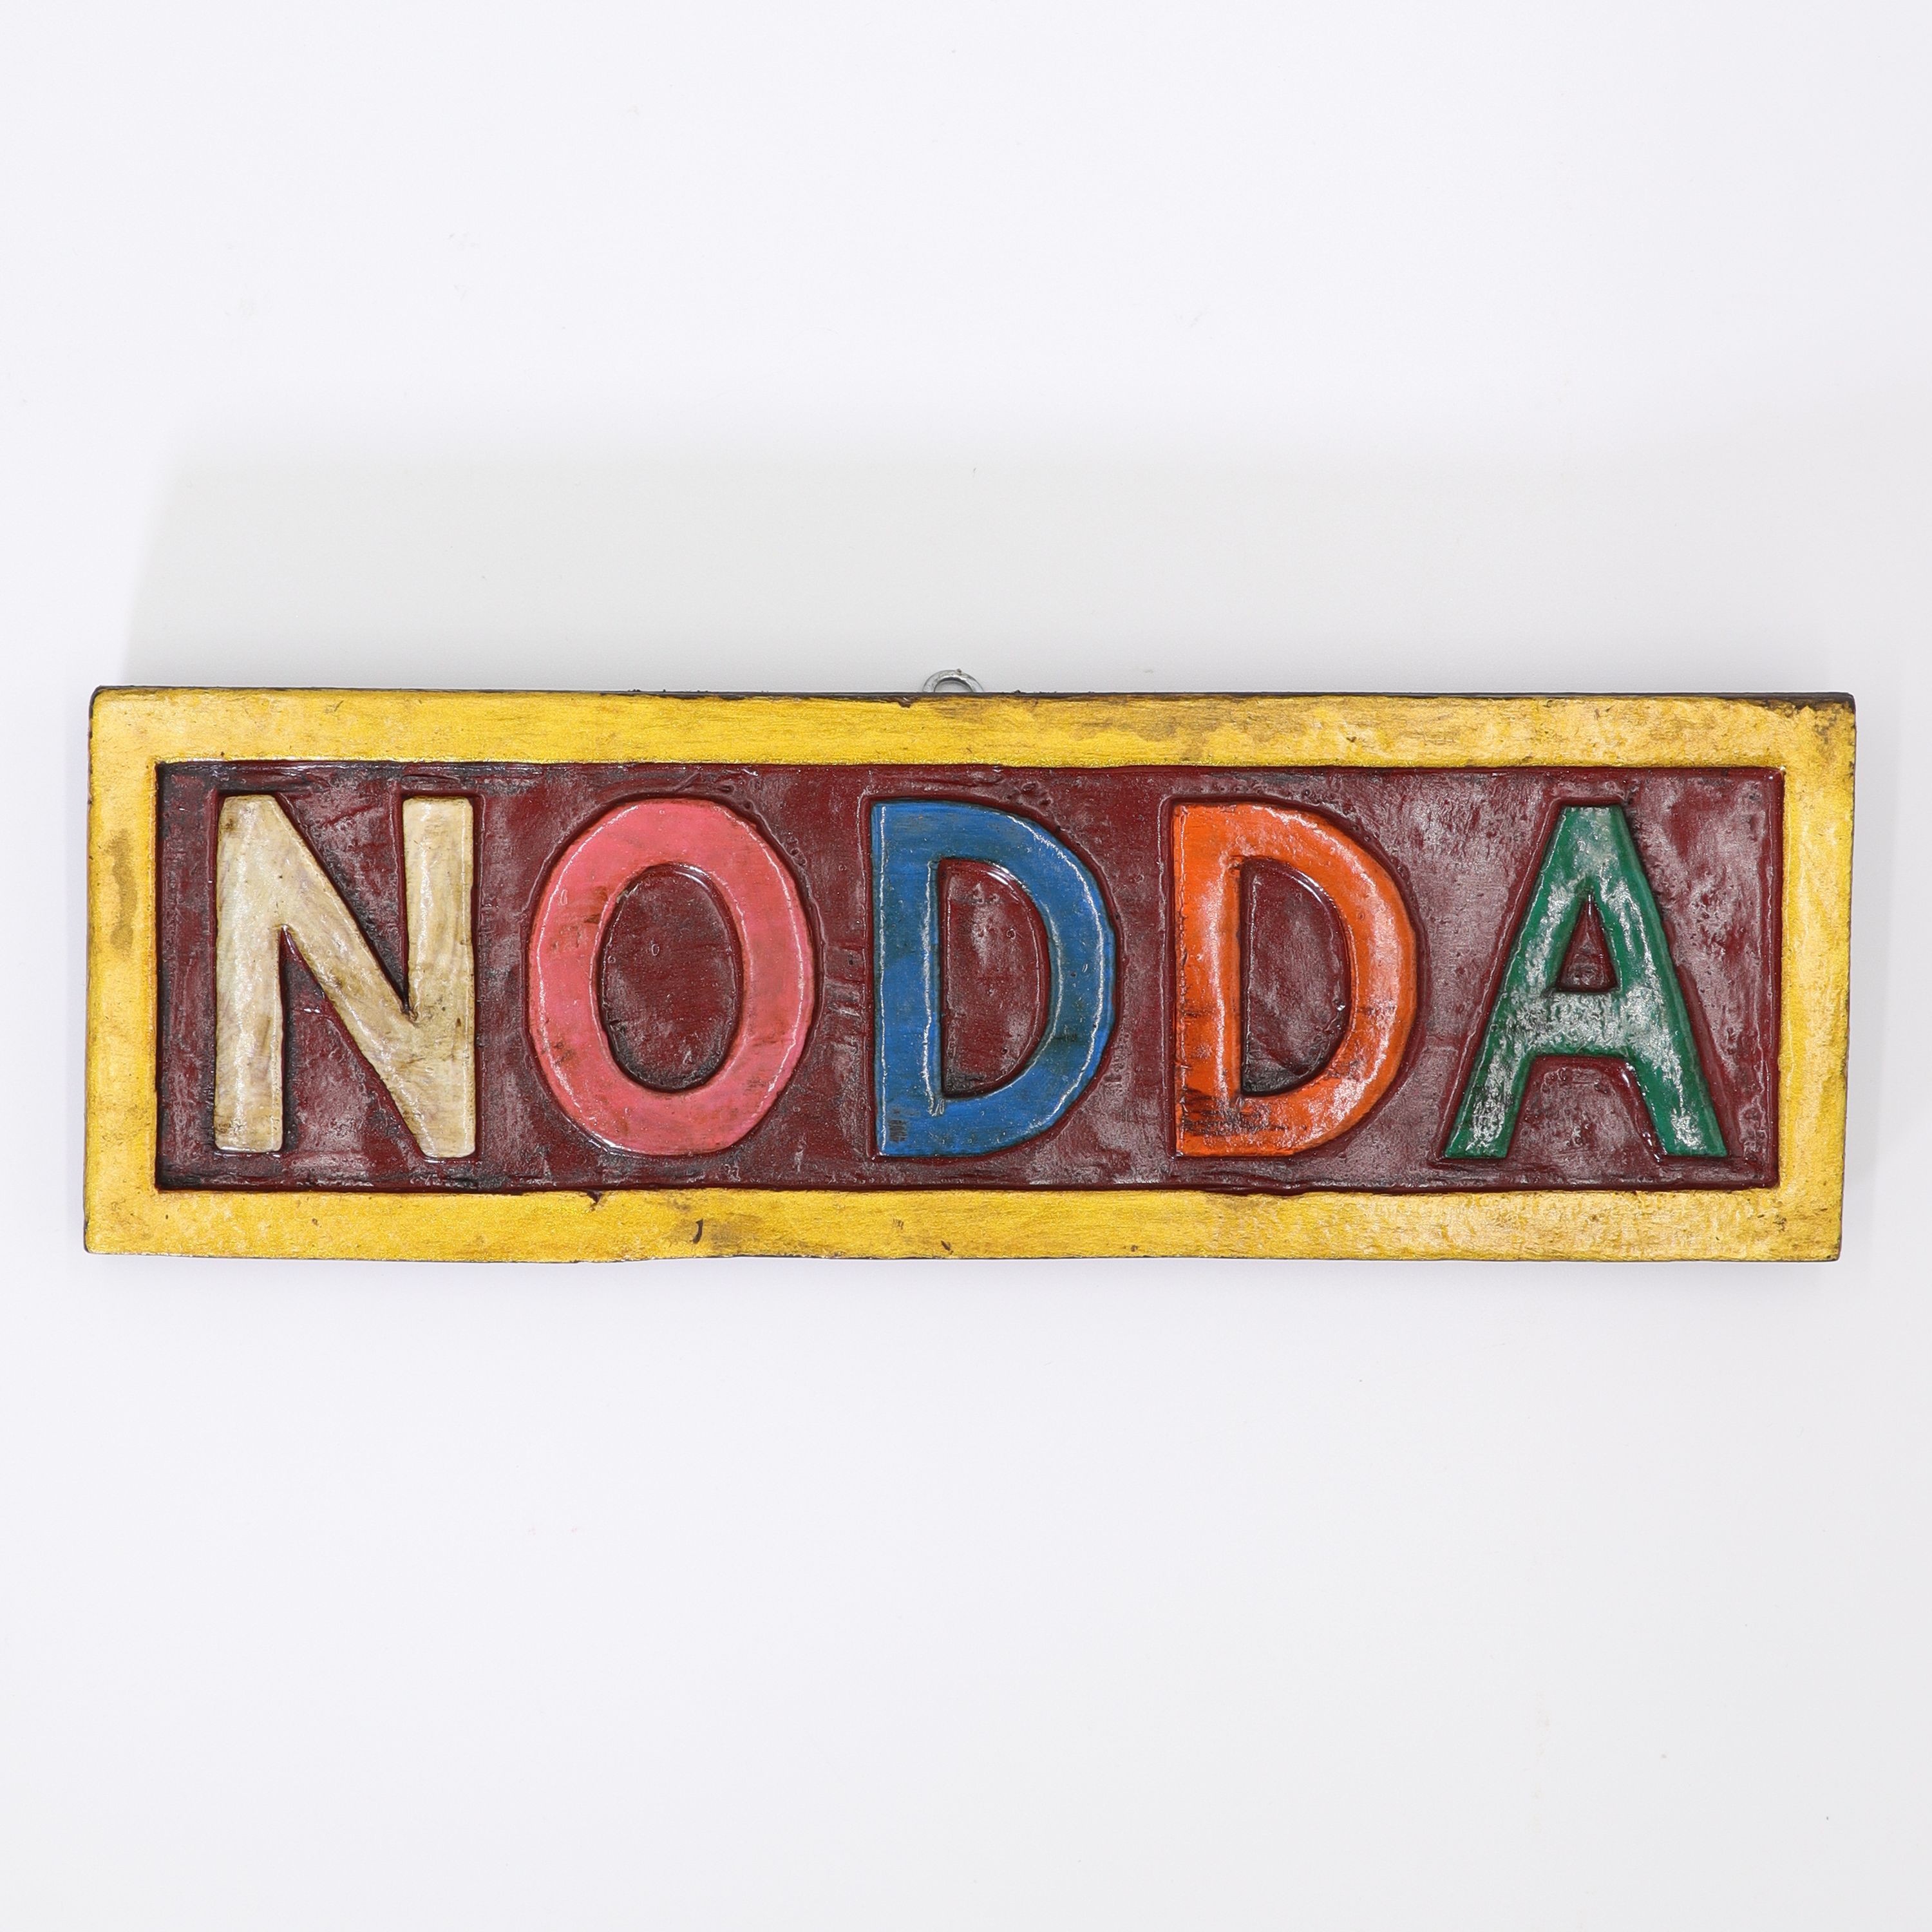 Schild aus Holz - Nodda & Namaste als zweiseitiges Wende-Schild - buntes Wandbild von Hand geschnitzt - ca. 8 x 24 cm - wundervolle Wanddekoration in traditionell nepalesischen Farben - echte Handarbeit und fair gehandelt aus Nepal